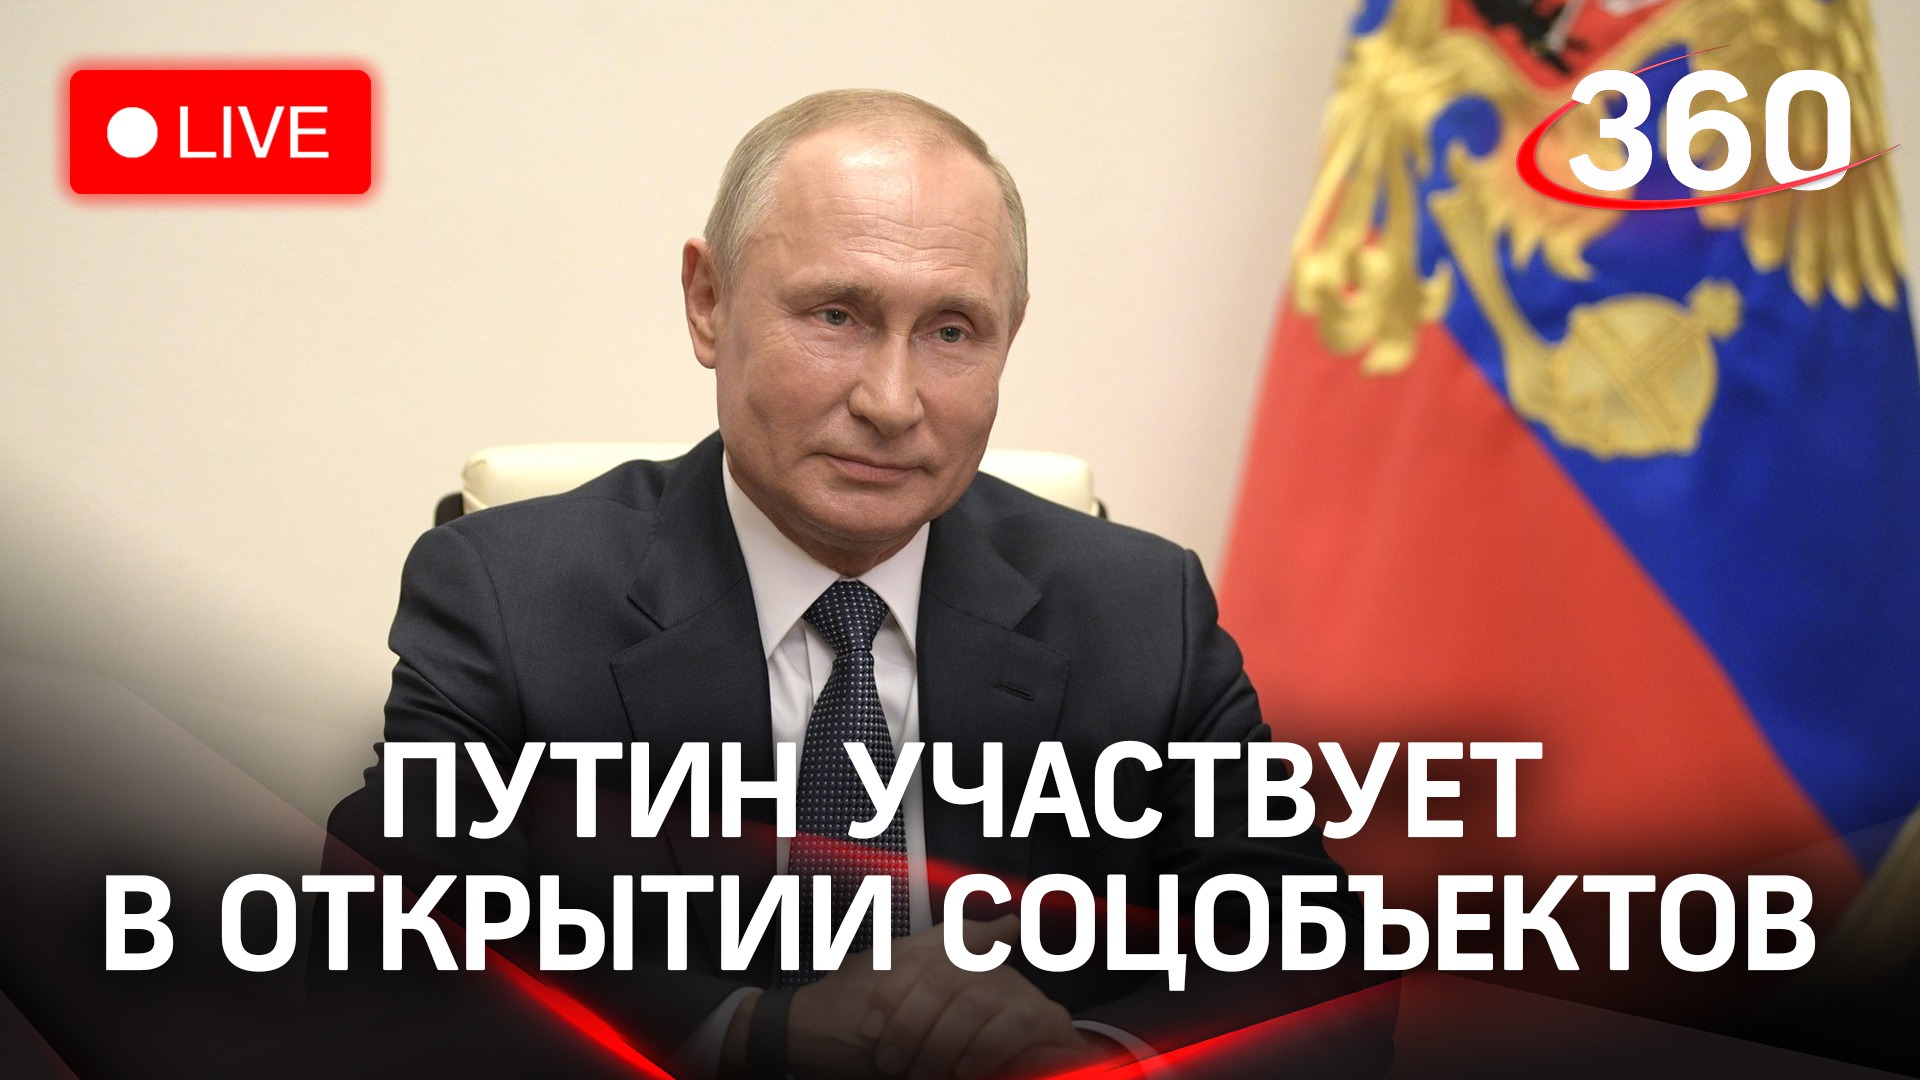 Владимир Путин участвует в открытии соцобъектов